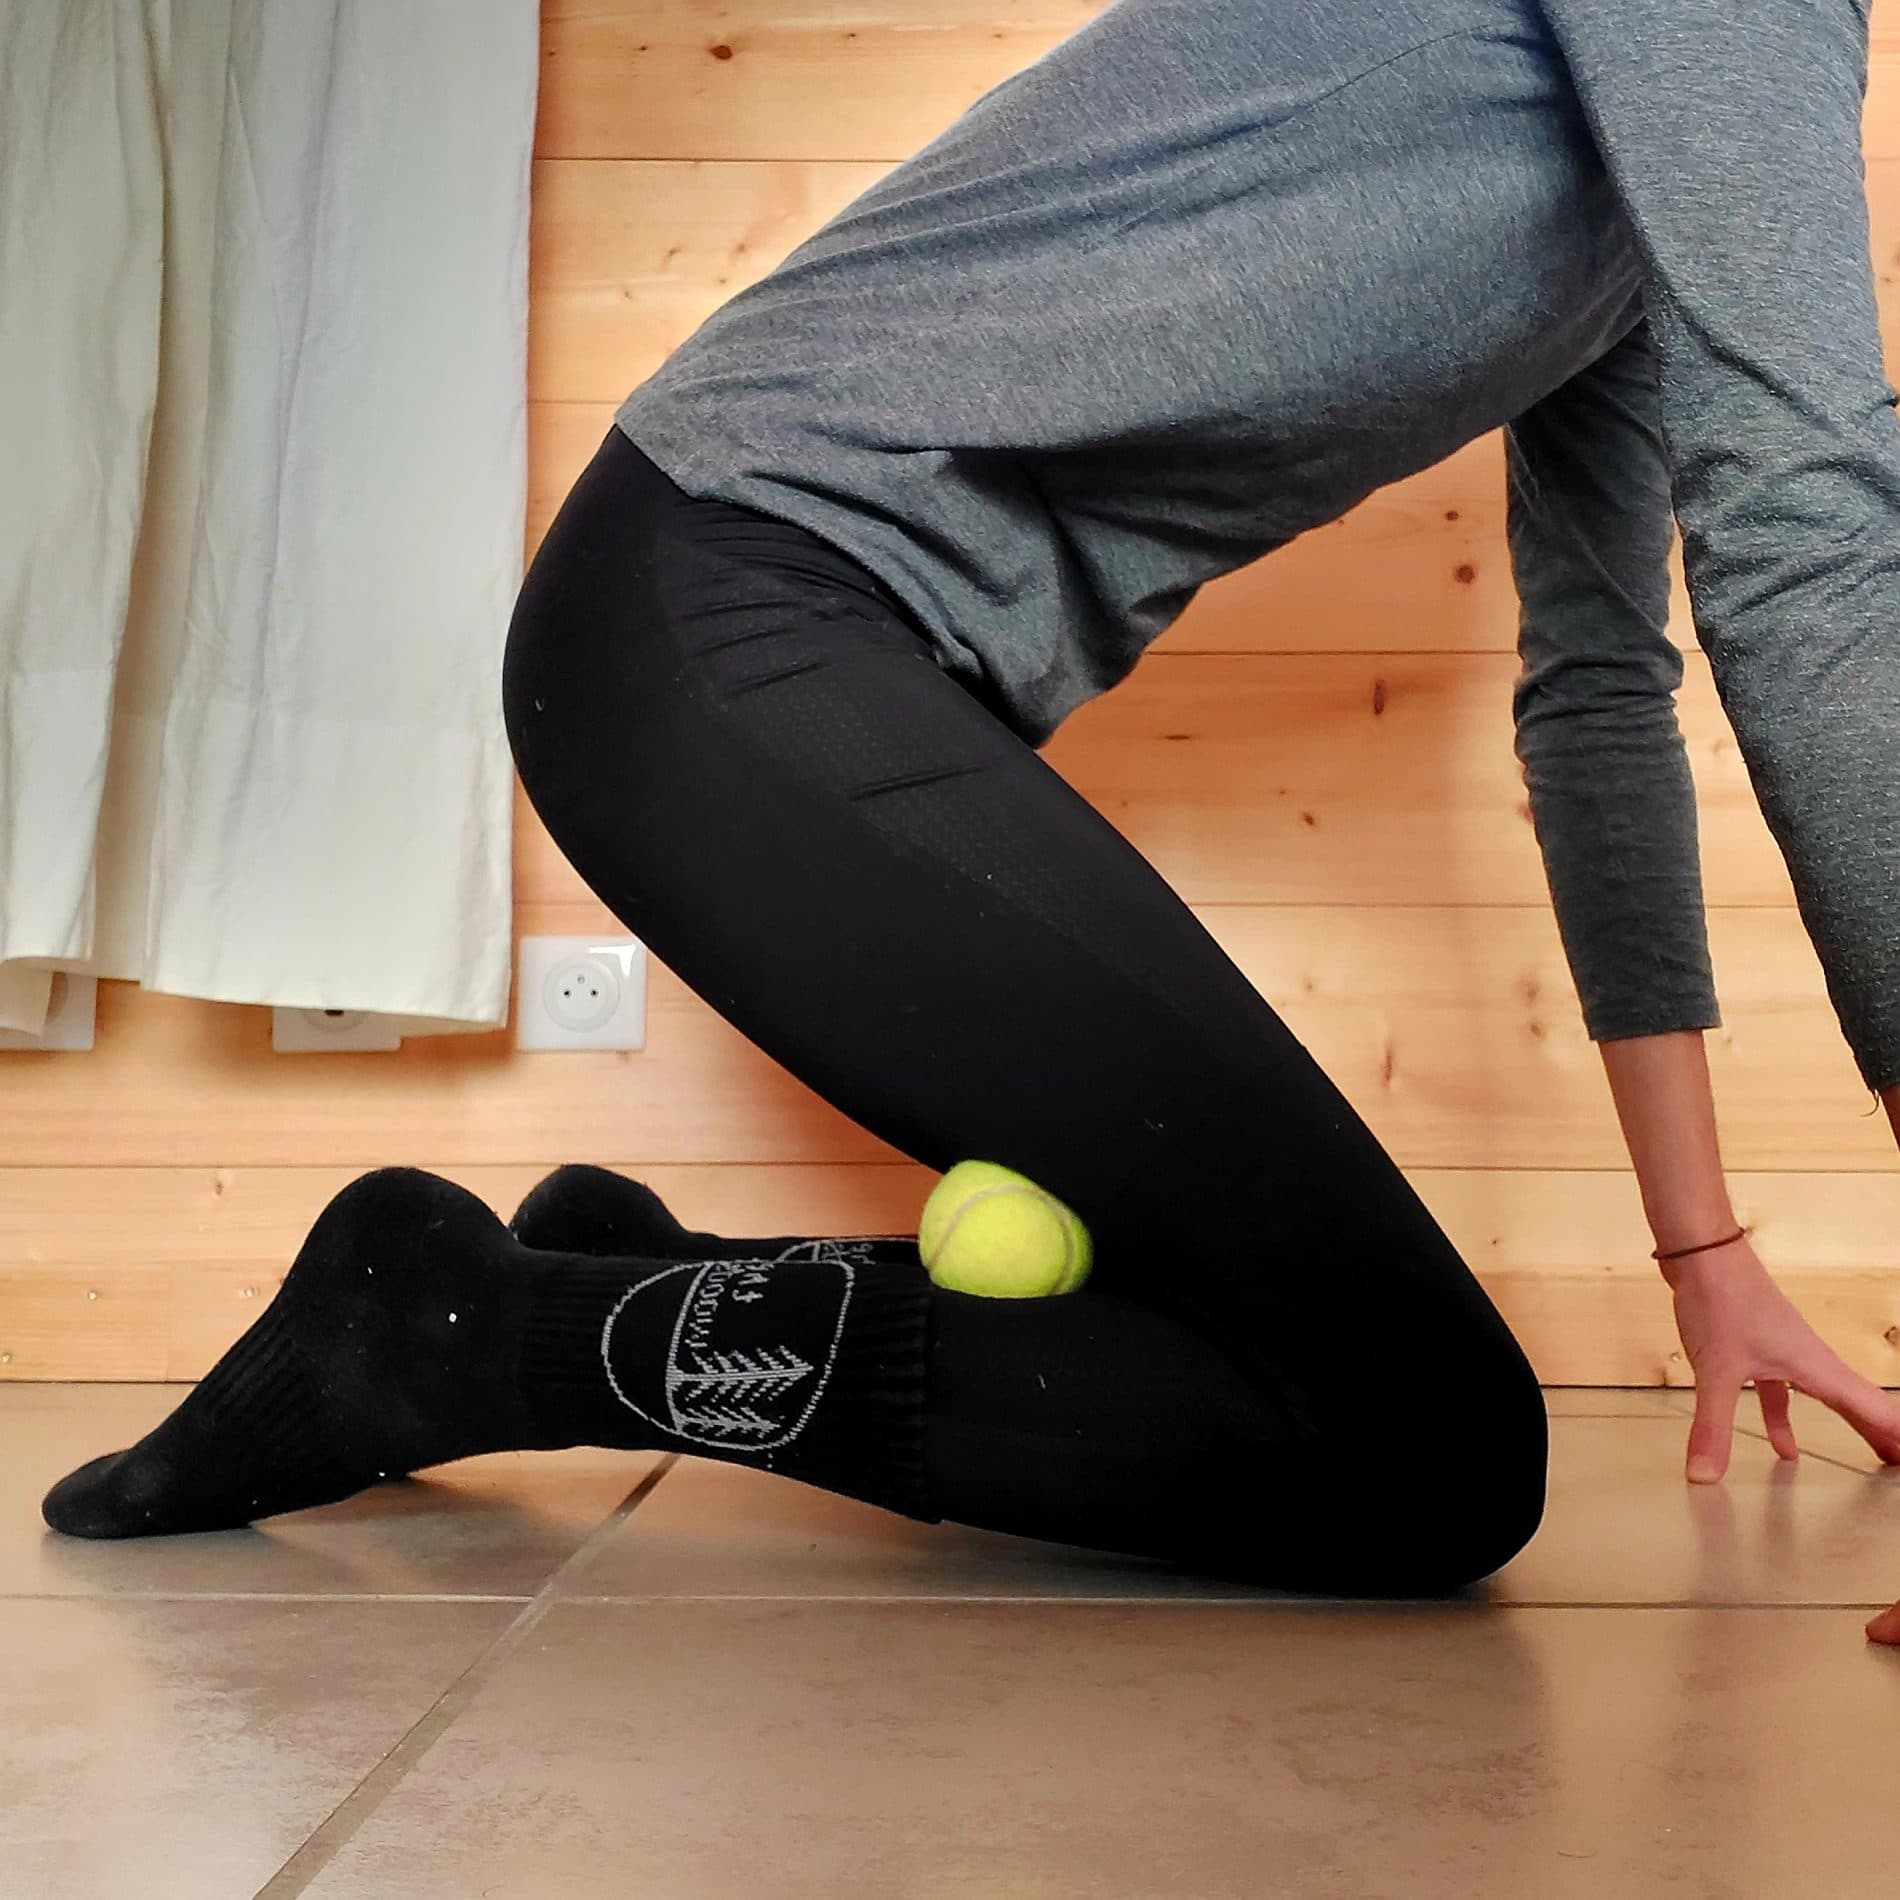 leg massage with tennis ball